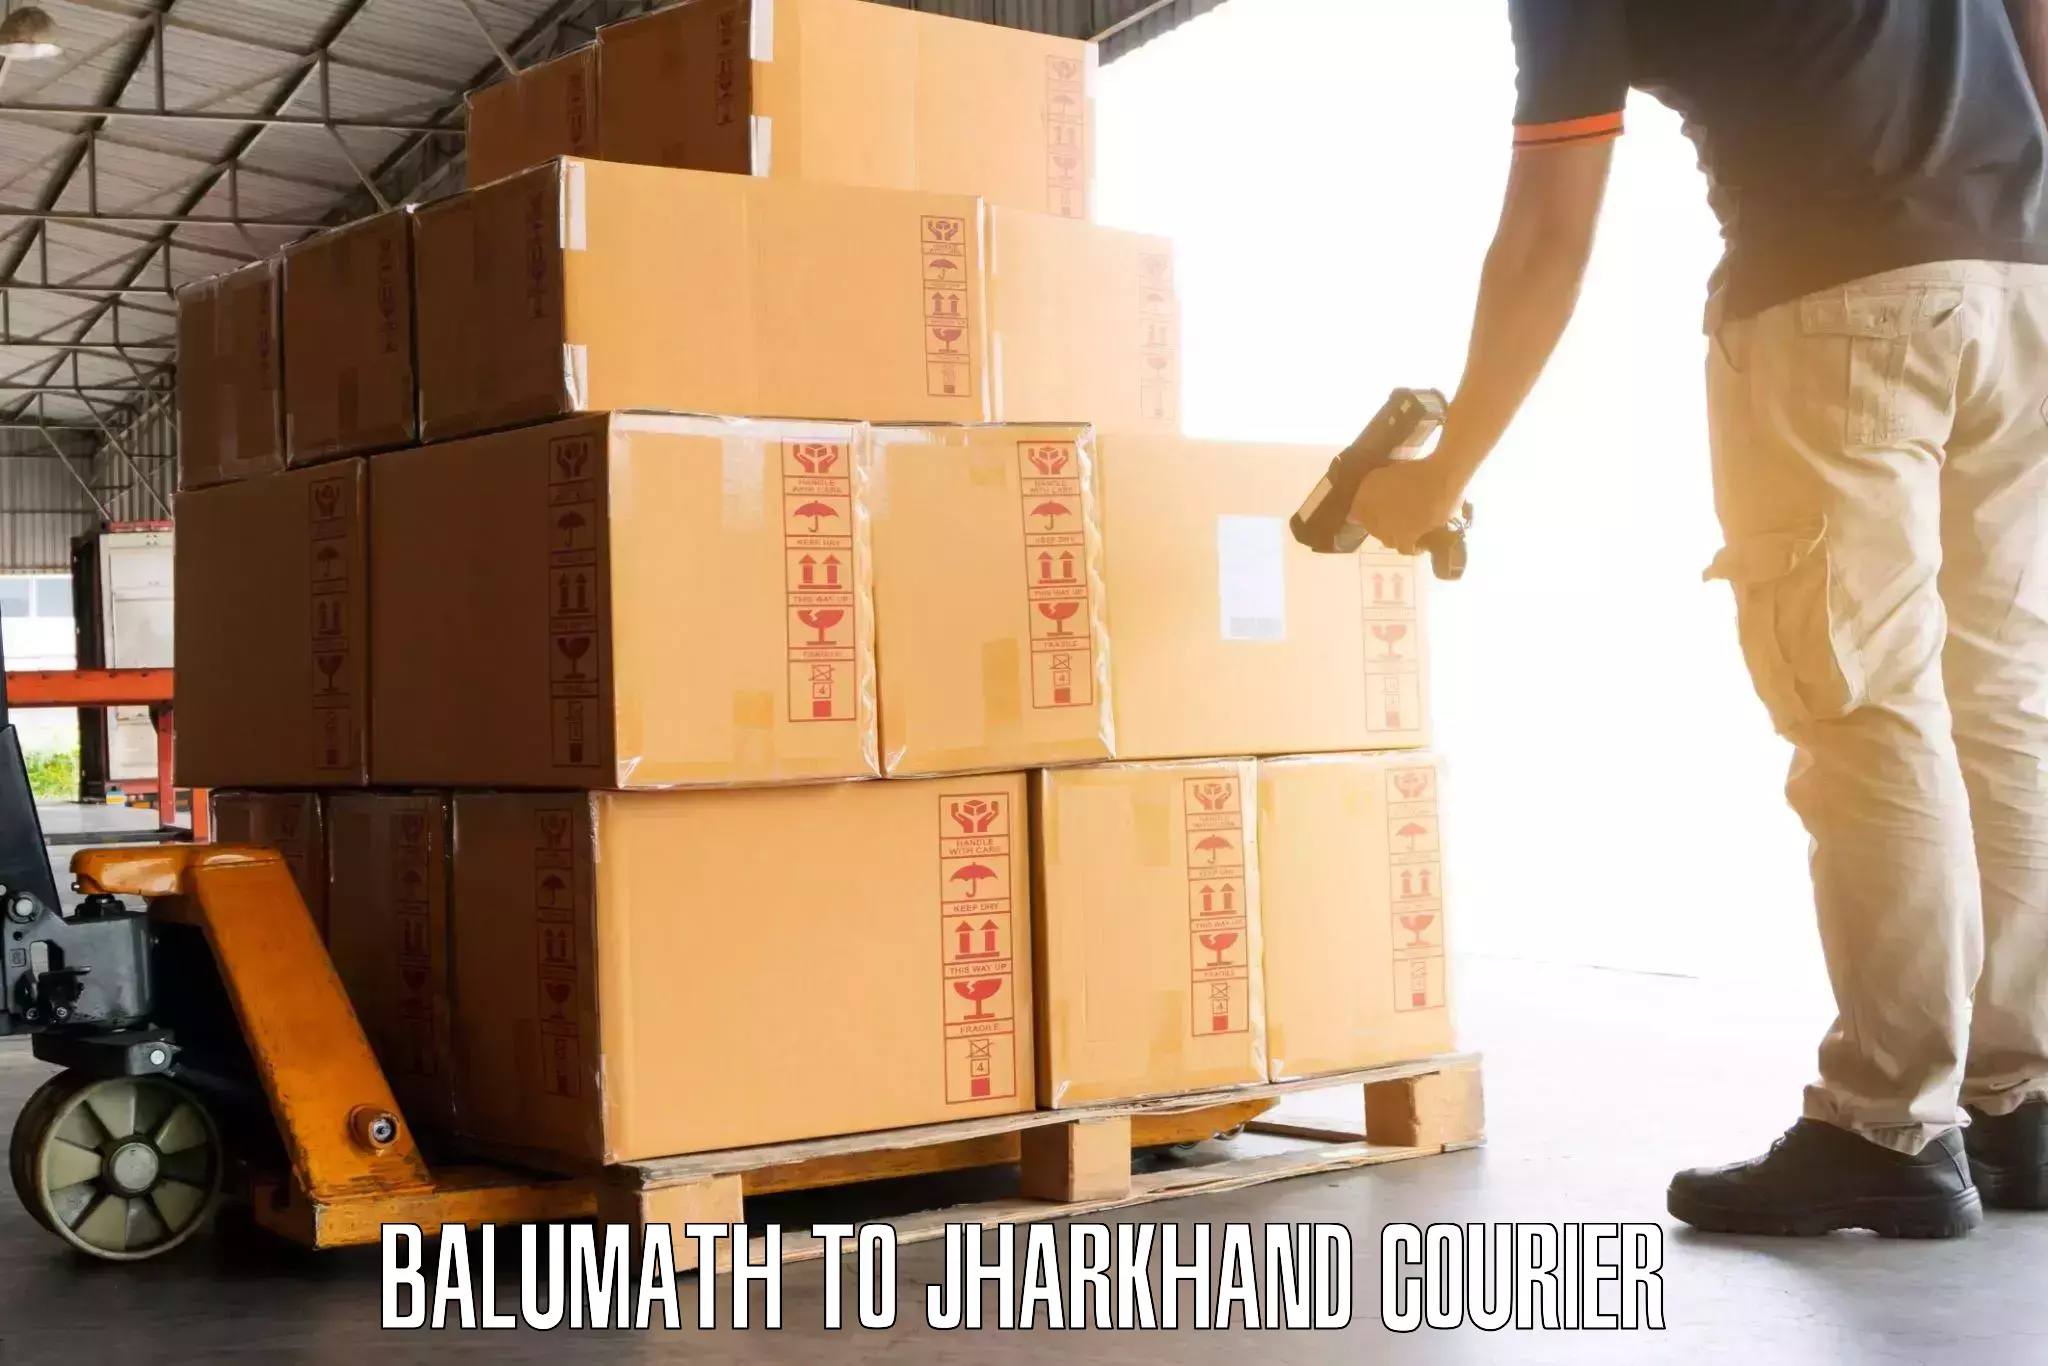 Luggage delivery rates Balumath to Balumath